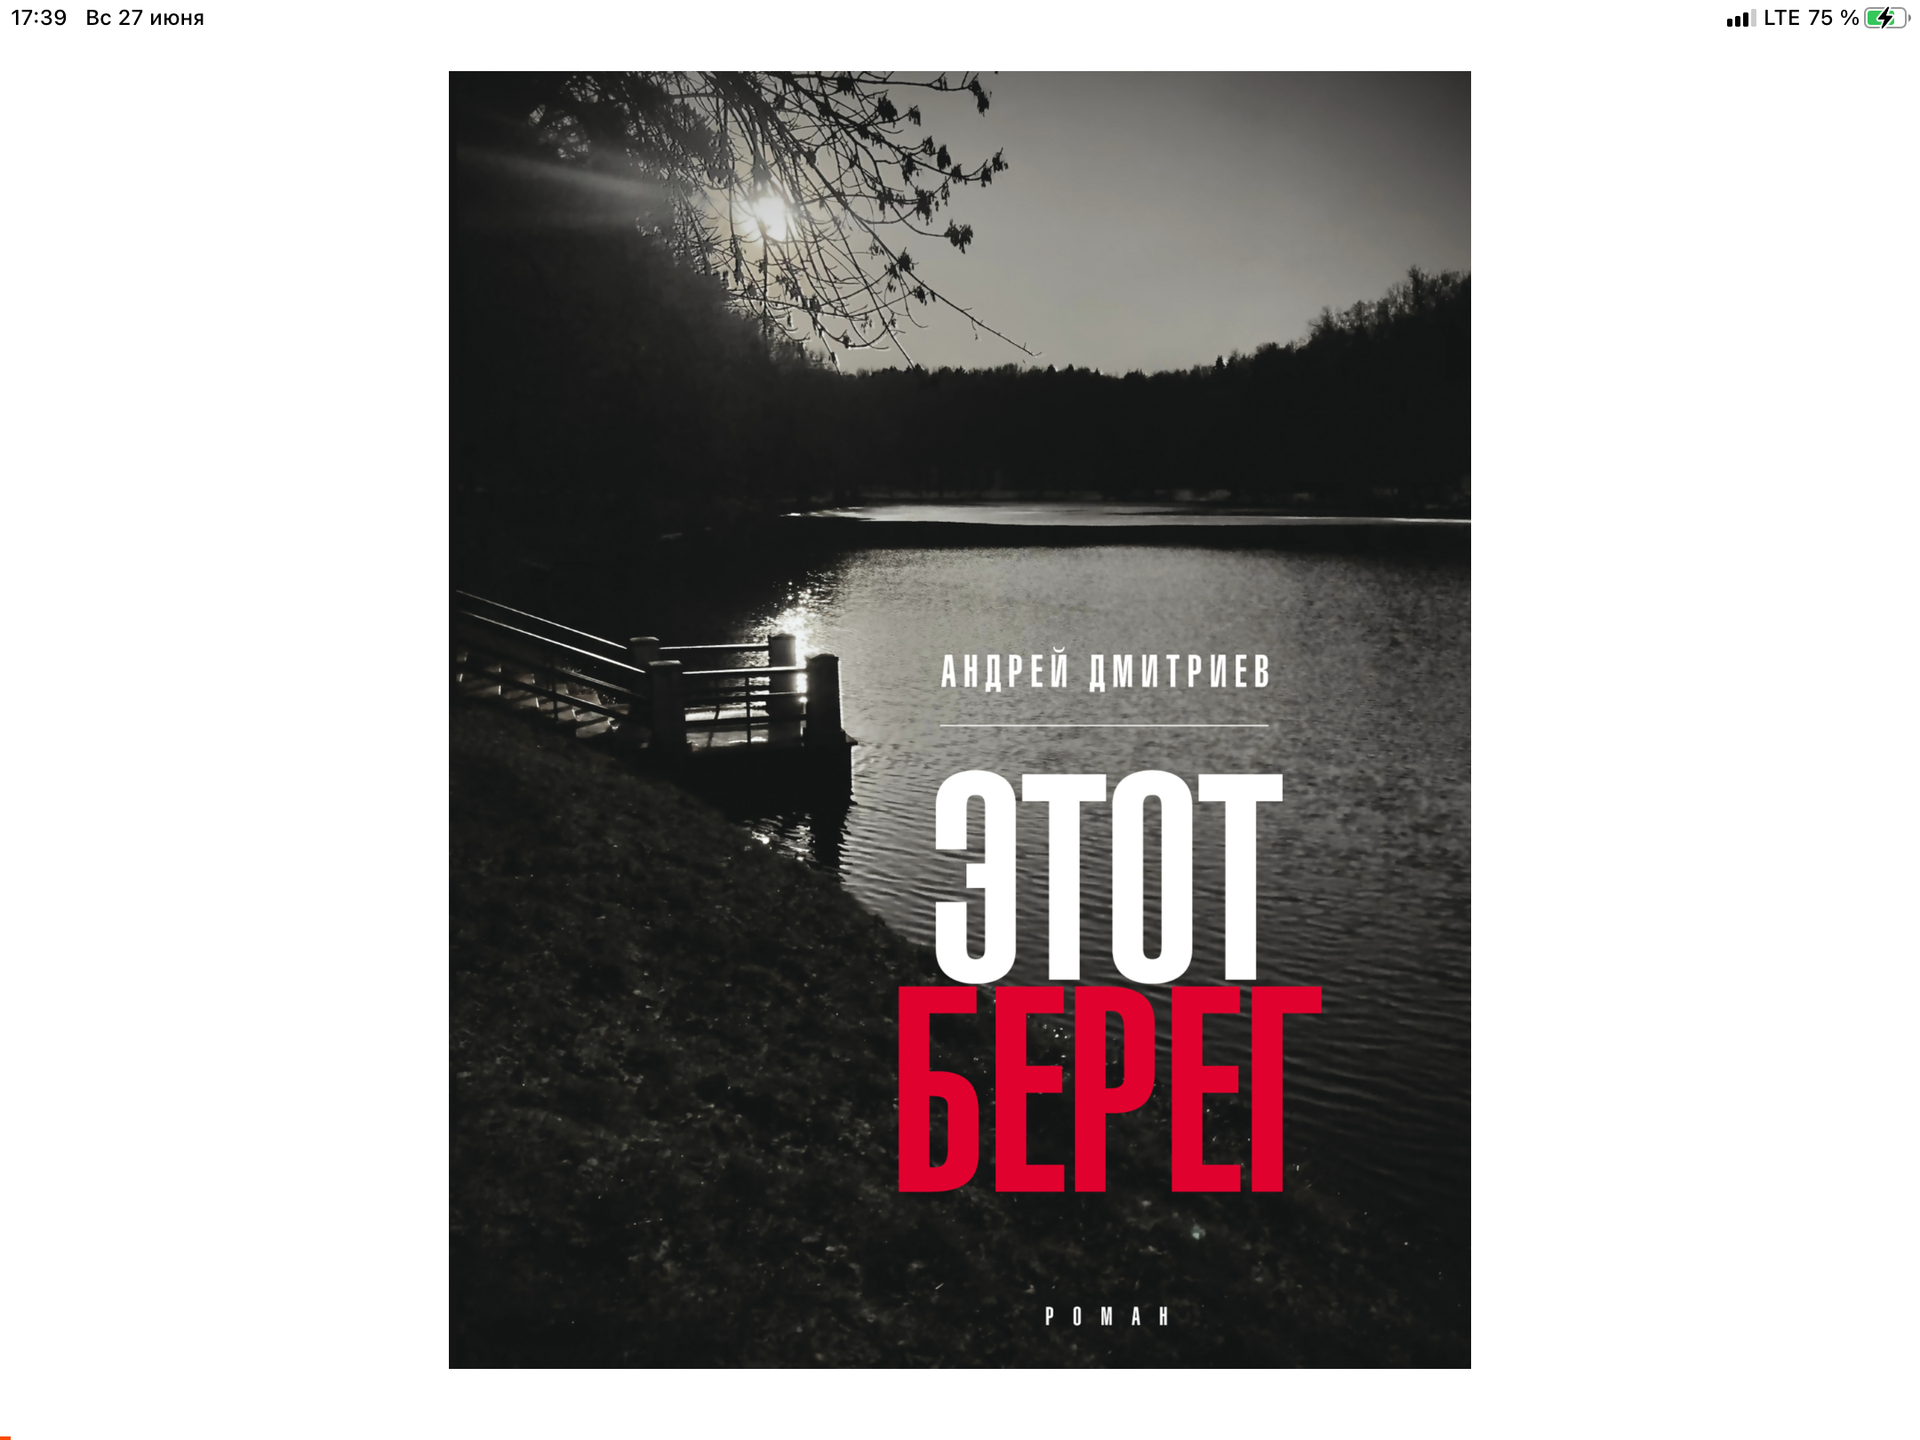 Здесь и сейчас: роман "Этот берег" Андрея Дмитриева говорит о современности